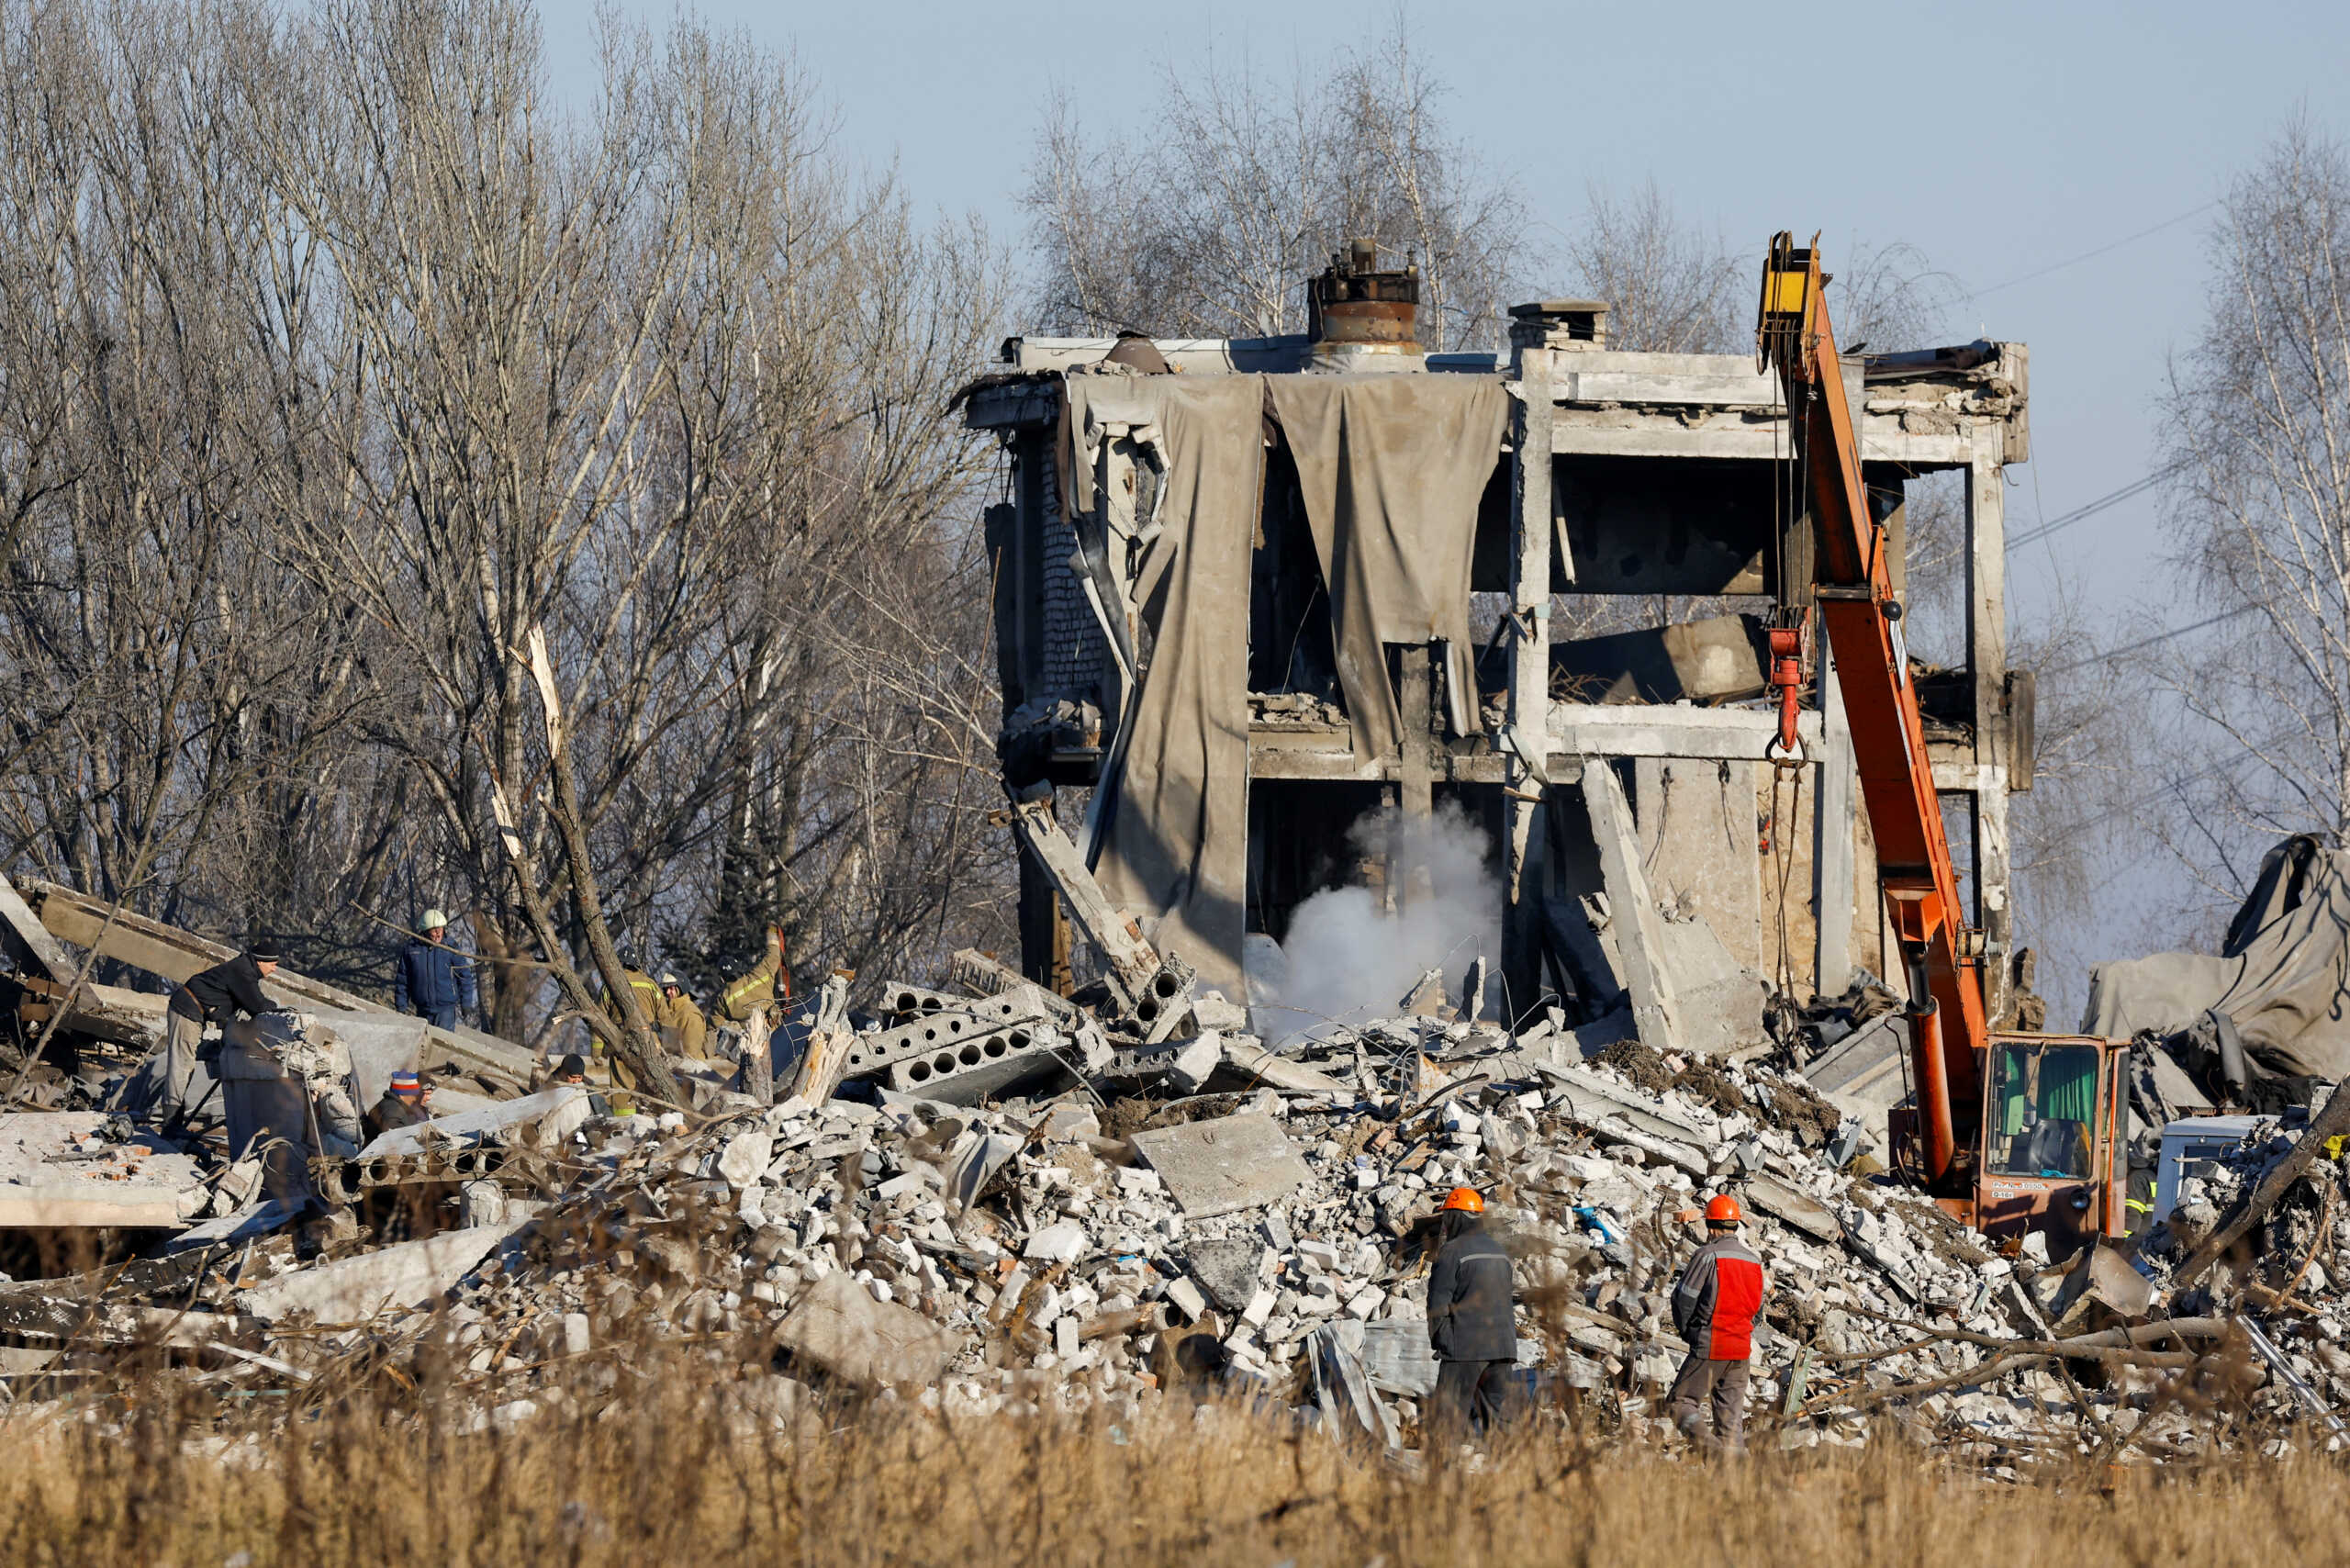 Ρωσία: 10 στρατιώτες τραυματίστηκαν μετά από έκρηξη στο Μπέλγκοροντ